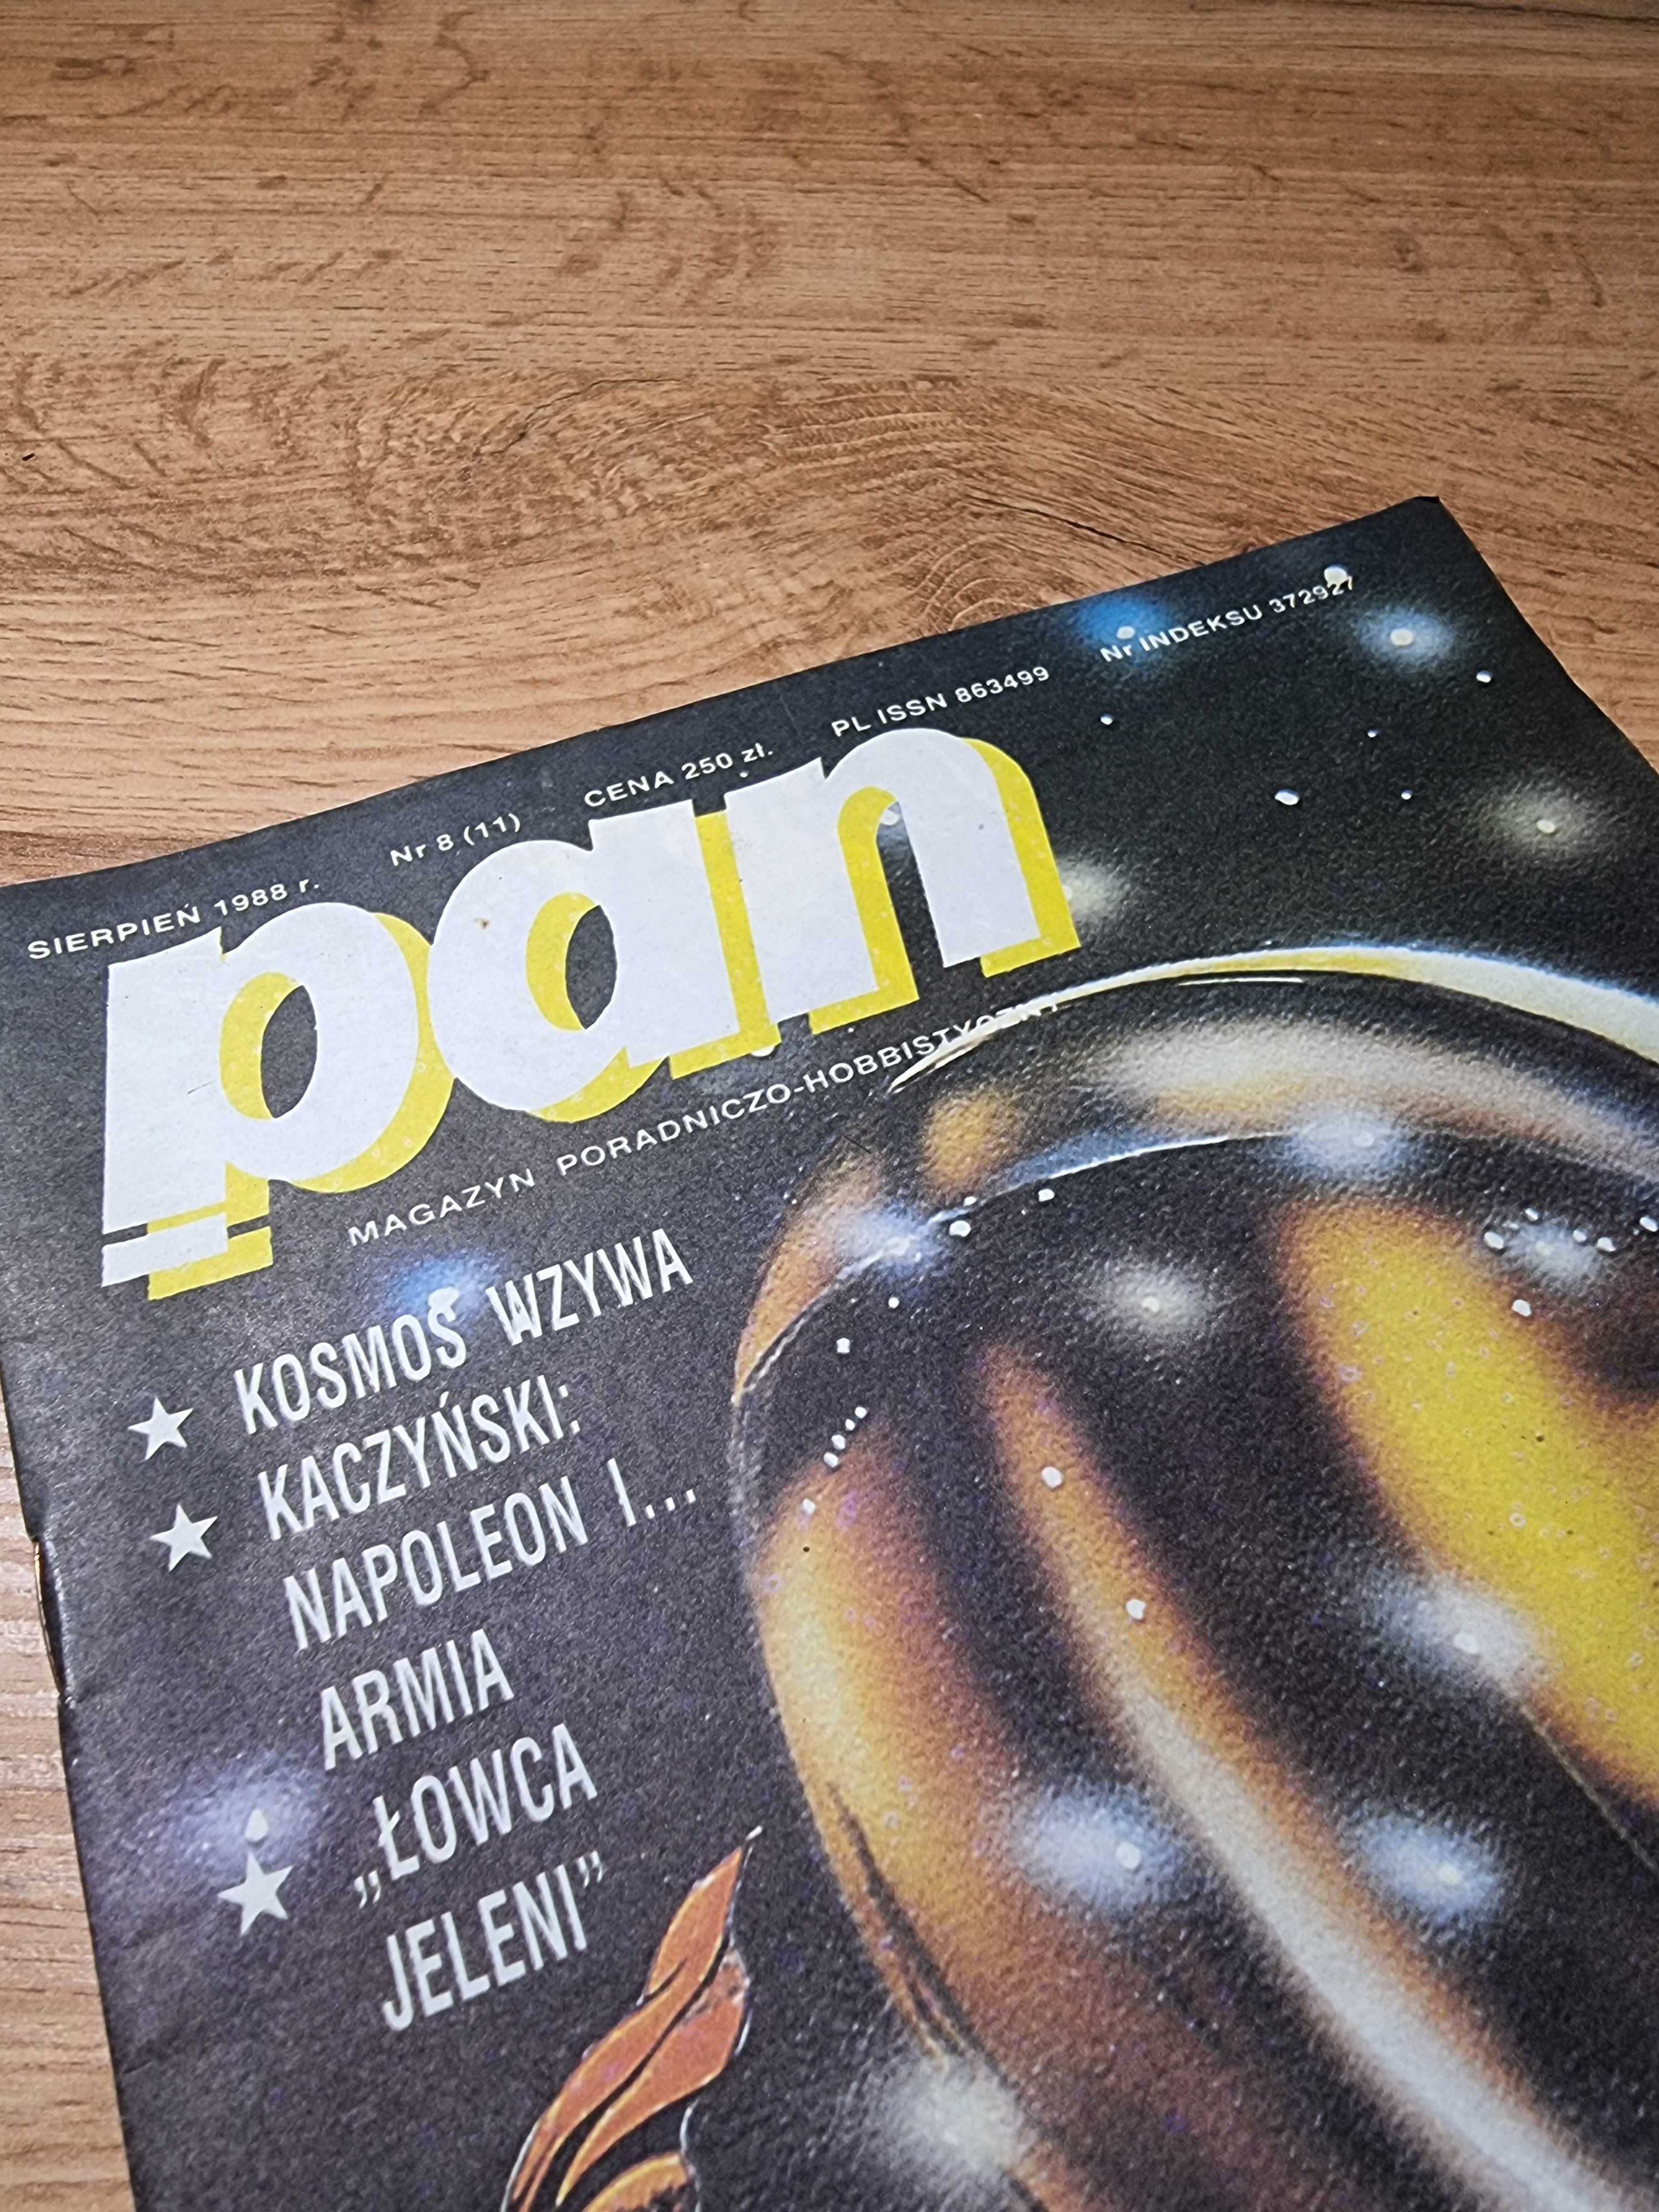 Magazyn Poradniczo-Hobbistyczny PAN 8 (11) 1988 - polski Playboy